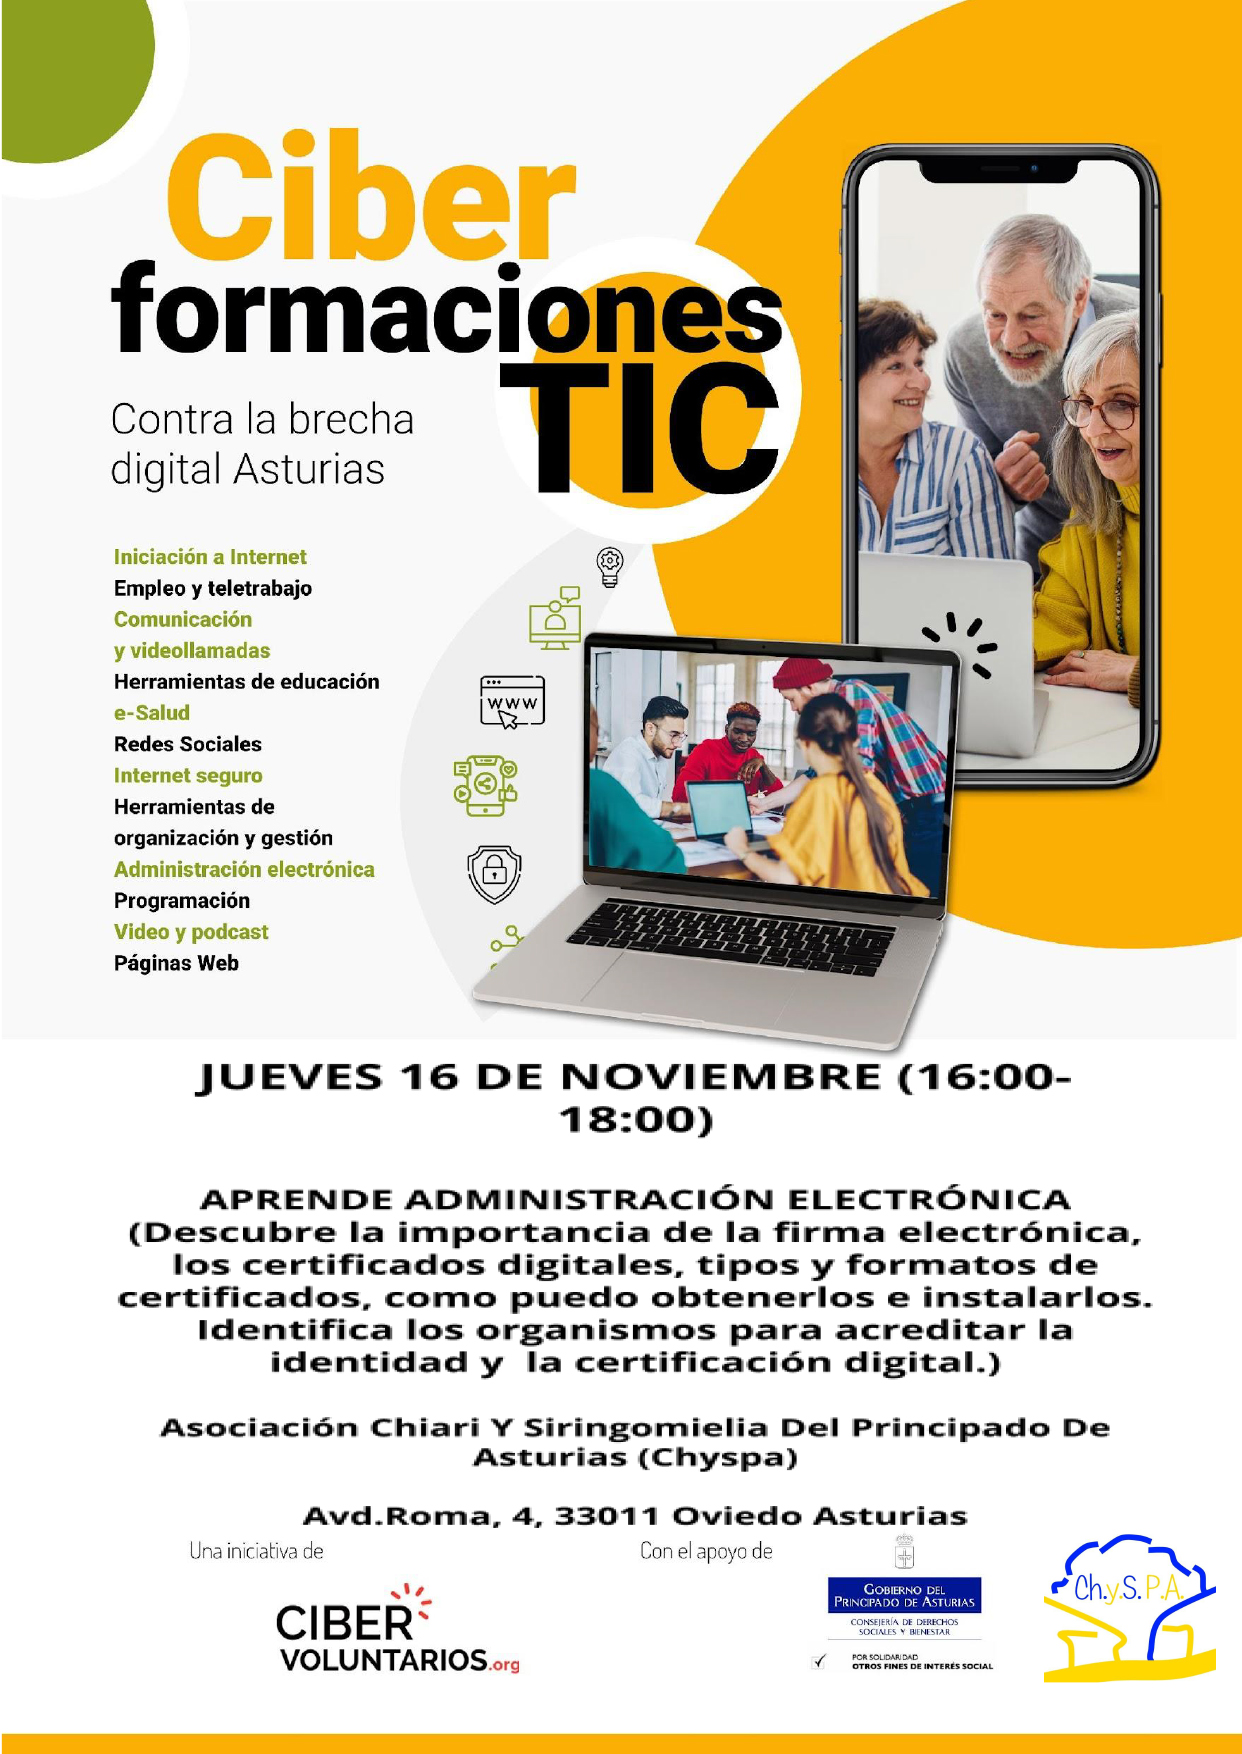 El 16 de noviembre realizaremos la 2º jornada del taller contra la brecha digital, a las 16:00h en Hotel de asociaciones, Avd. de Roma 4 (Oviedo).